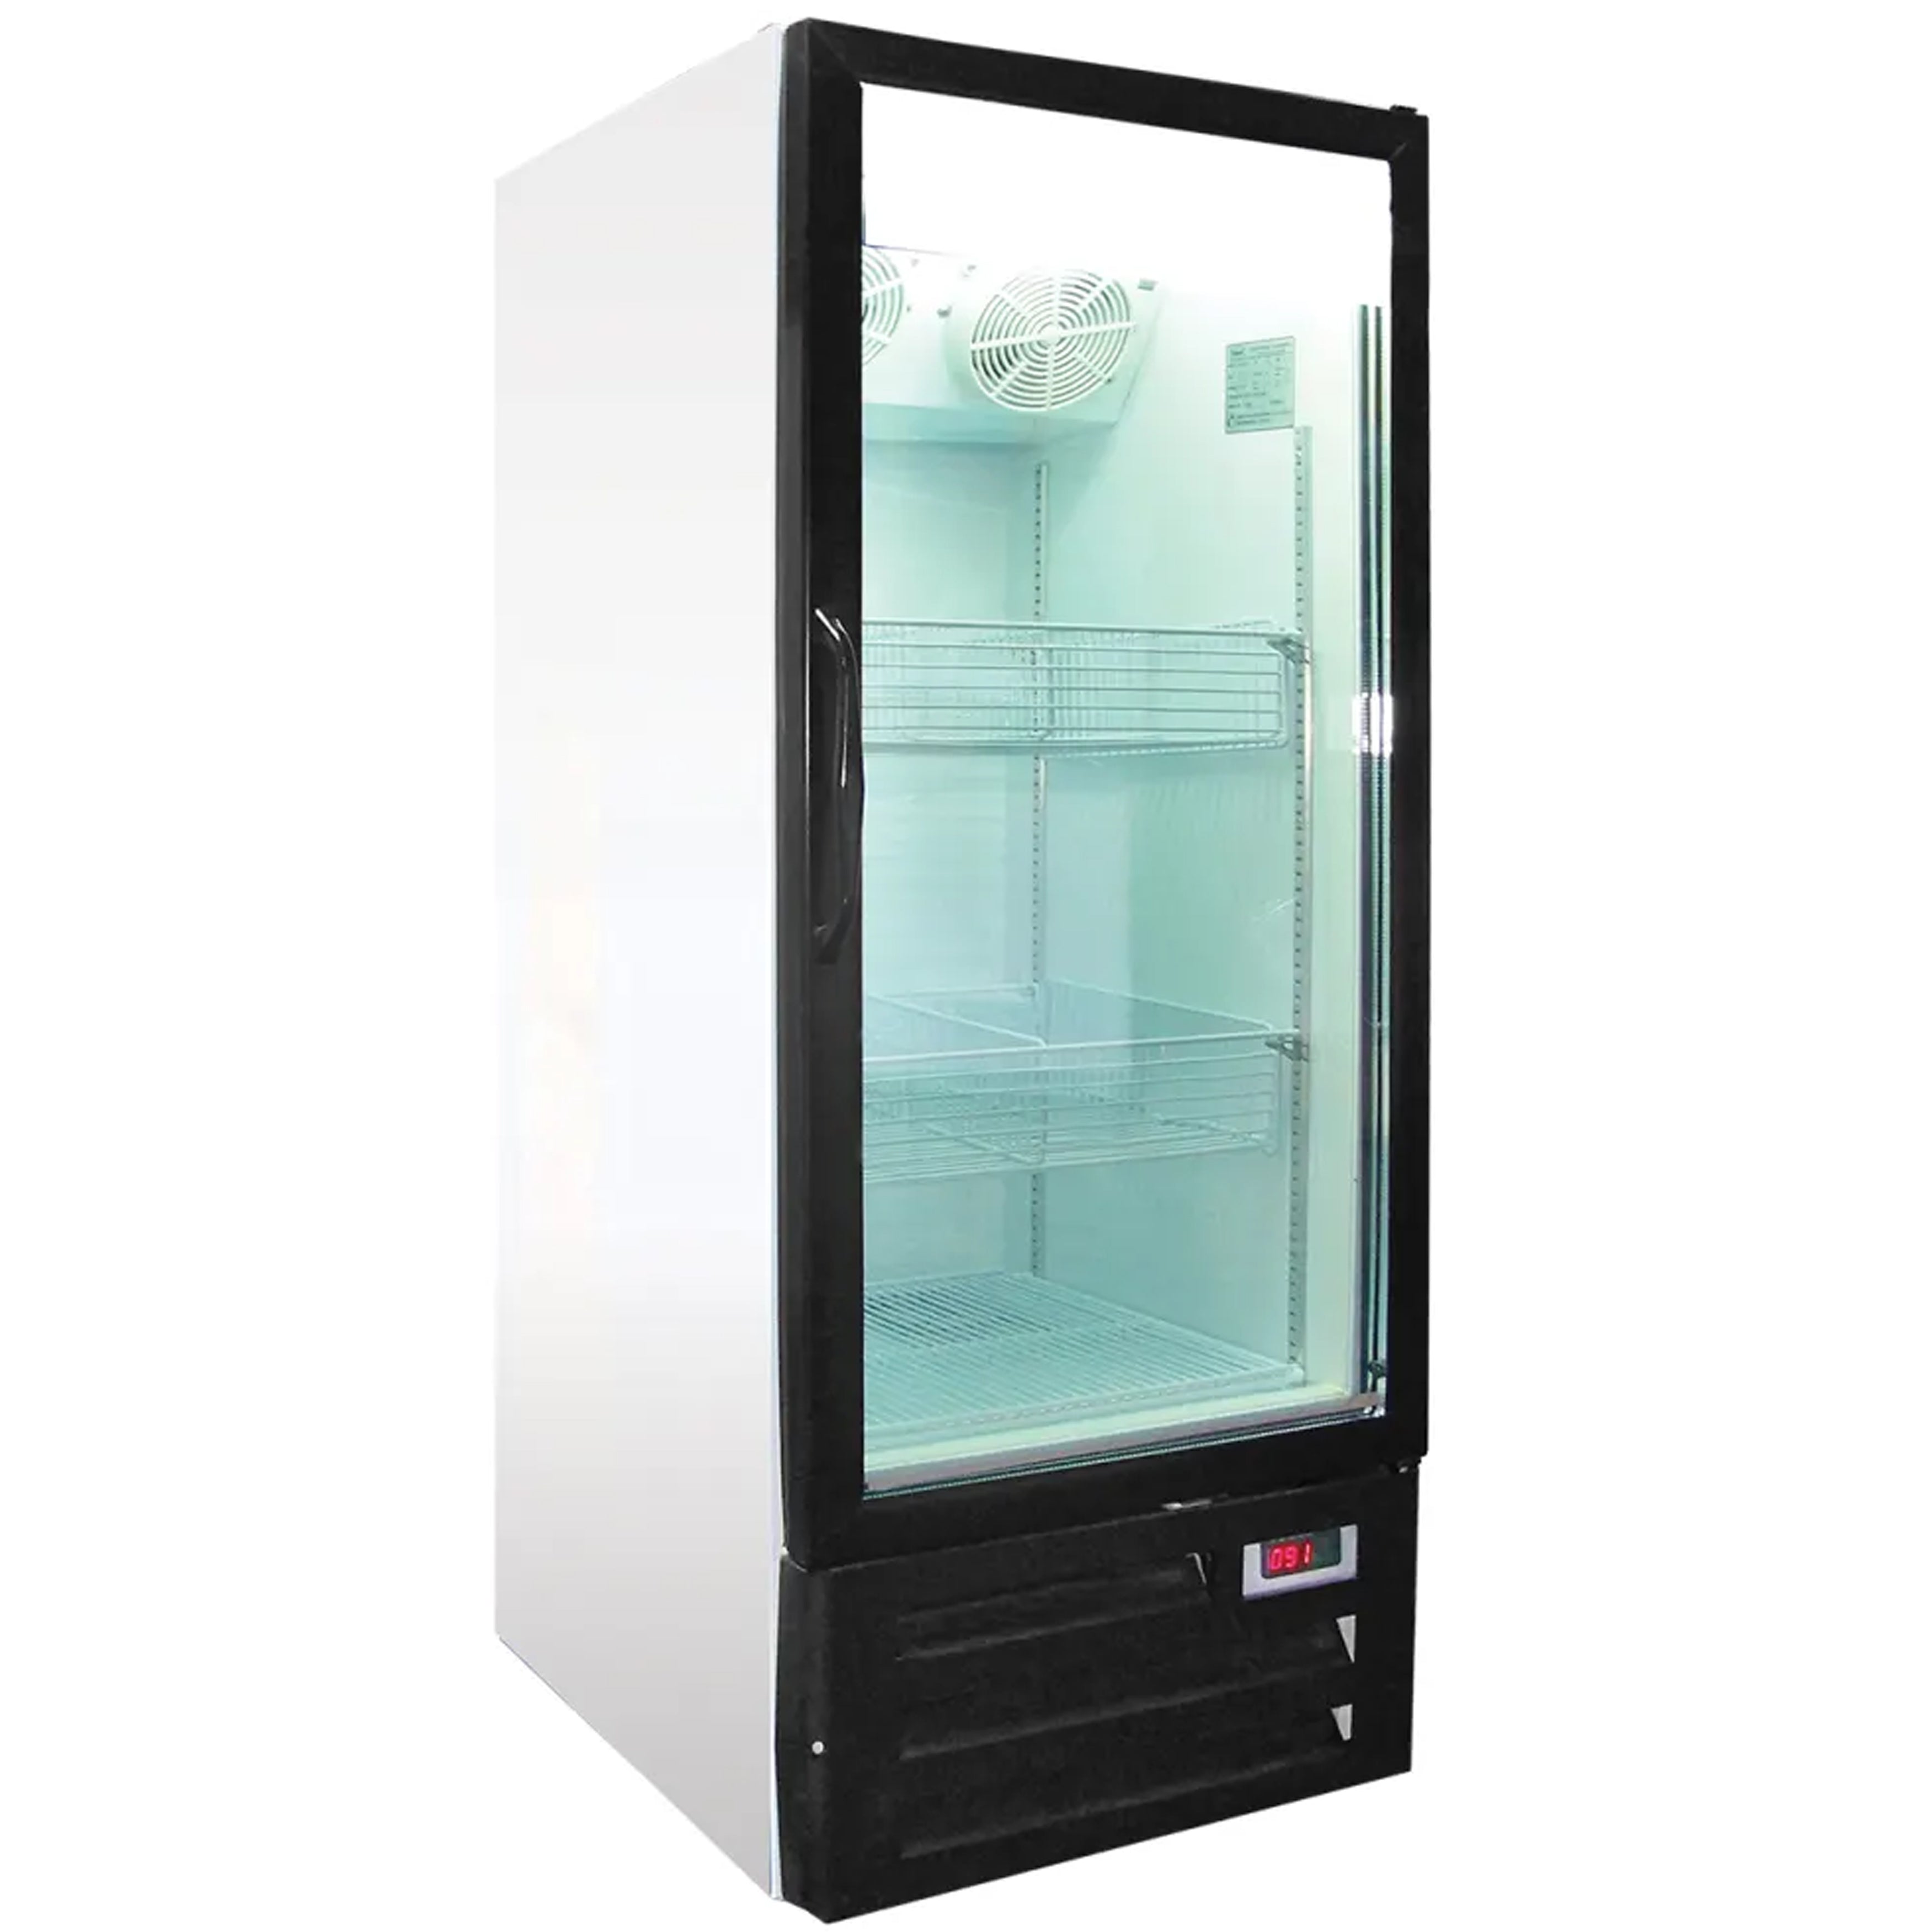 Excellence Industries - GDF-9M, 24" Commercial 1 Glass Door Merchandiser Freezer 7.3 cu.ft.